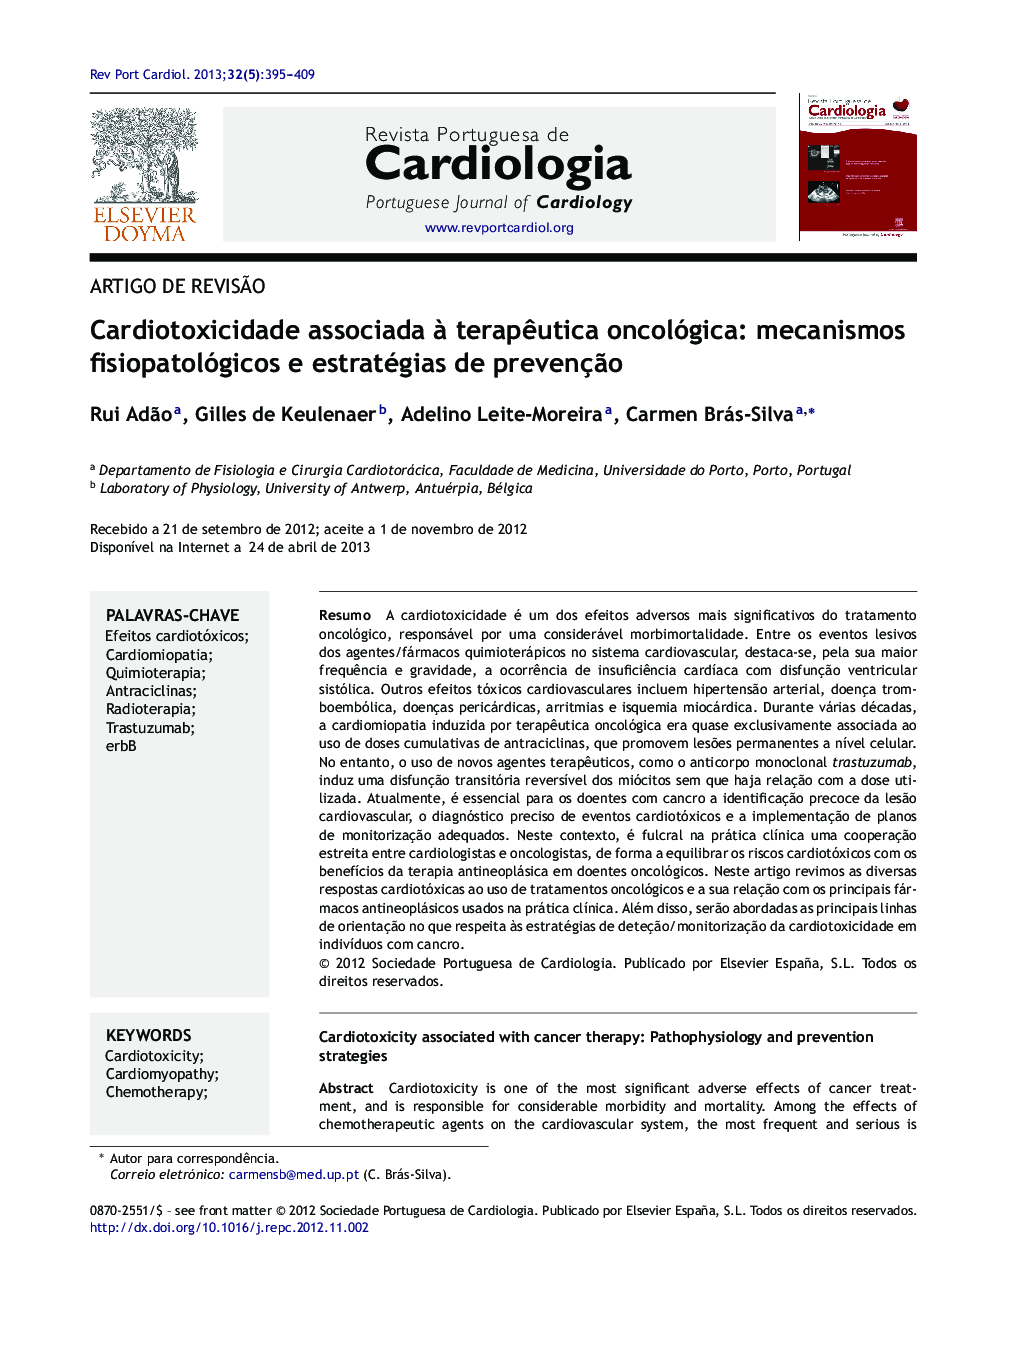 Cardiotoxicidade associada à terapêutica oncológica: mecanismos fisiopatológicos e estratégias de prevenção